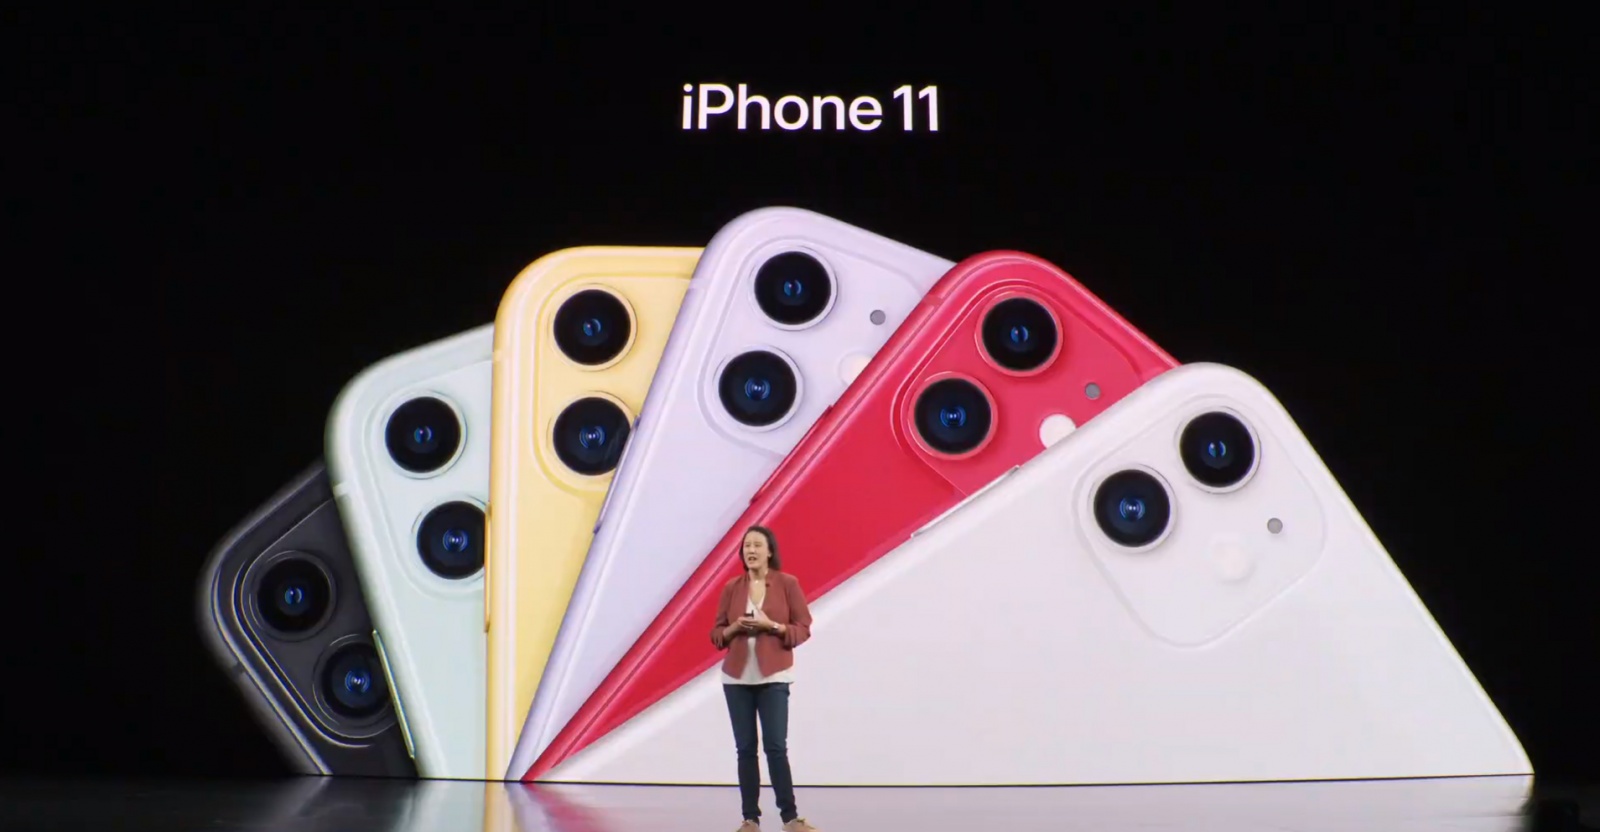 iPhone 11, новый iPad, TV+, Arcade и другое. Что сегодня показала Apple - 12